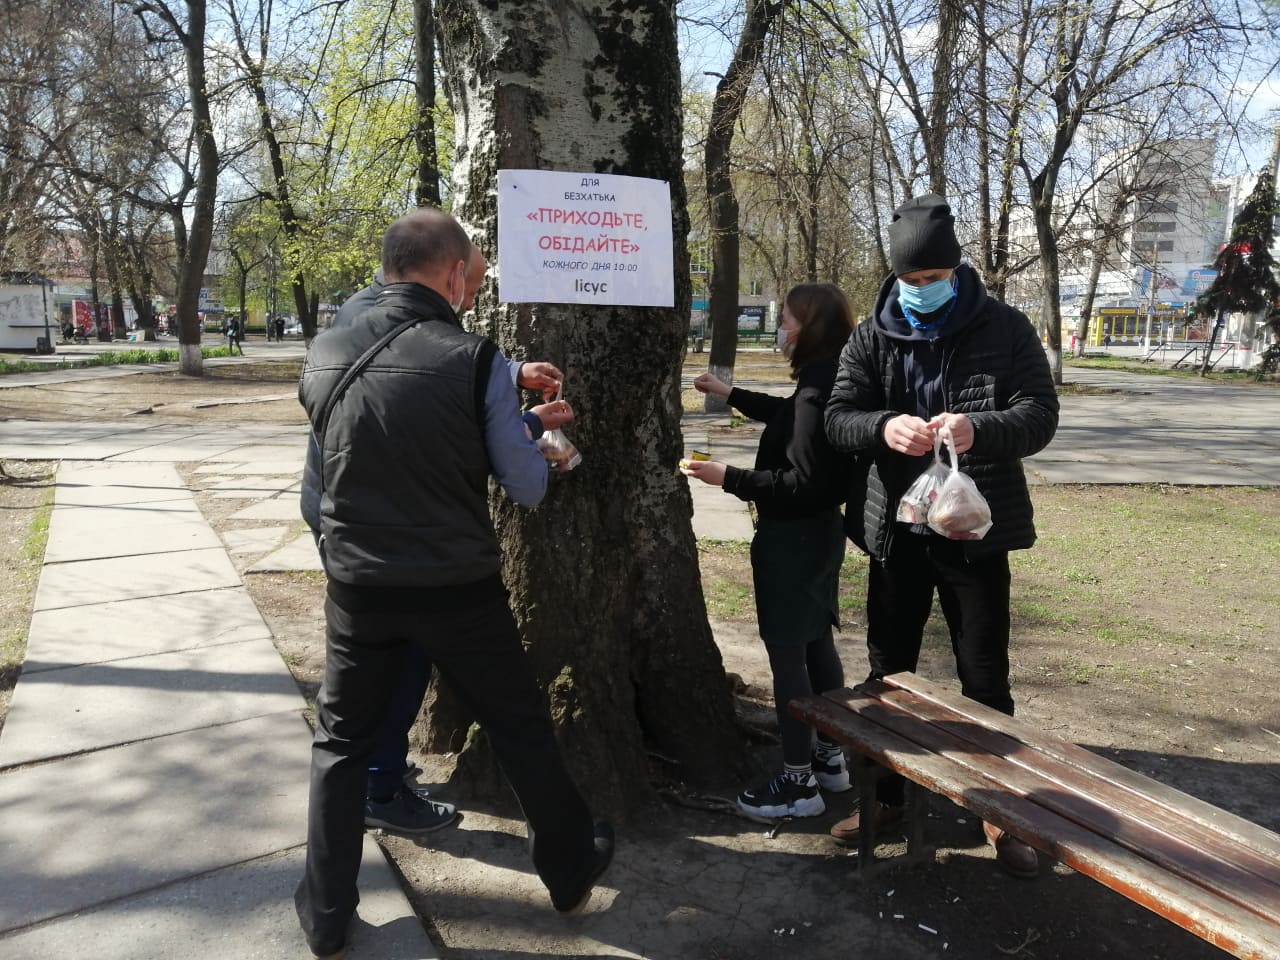 “Банк їжі” для нужденних планують створити в ще одному районі Кропивницького